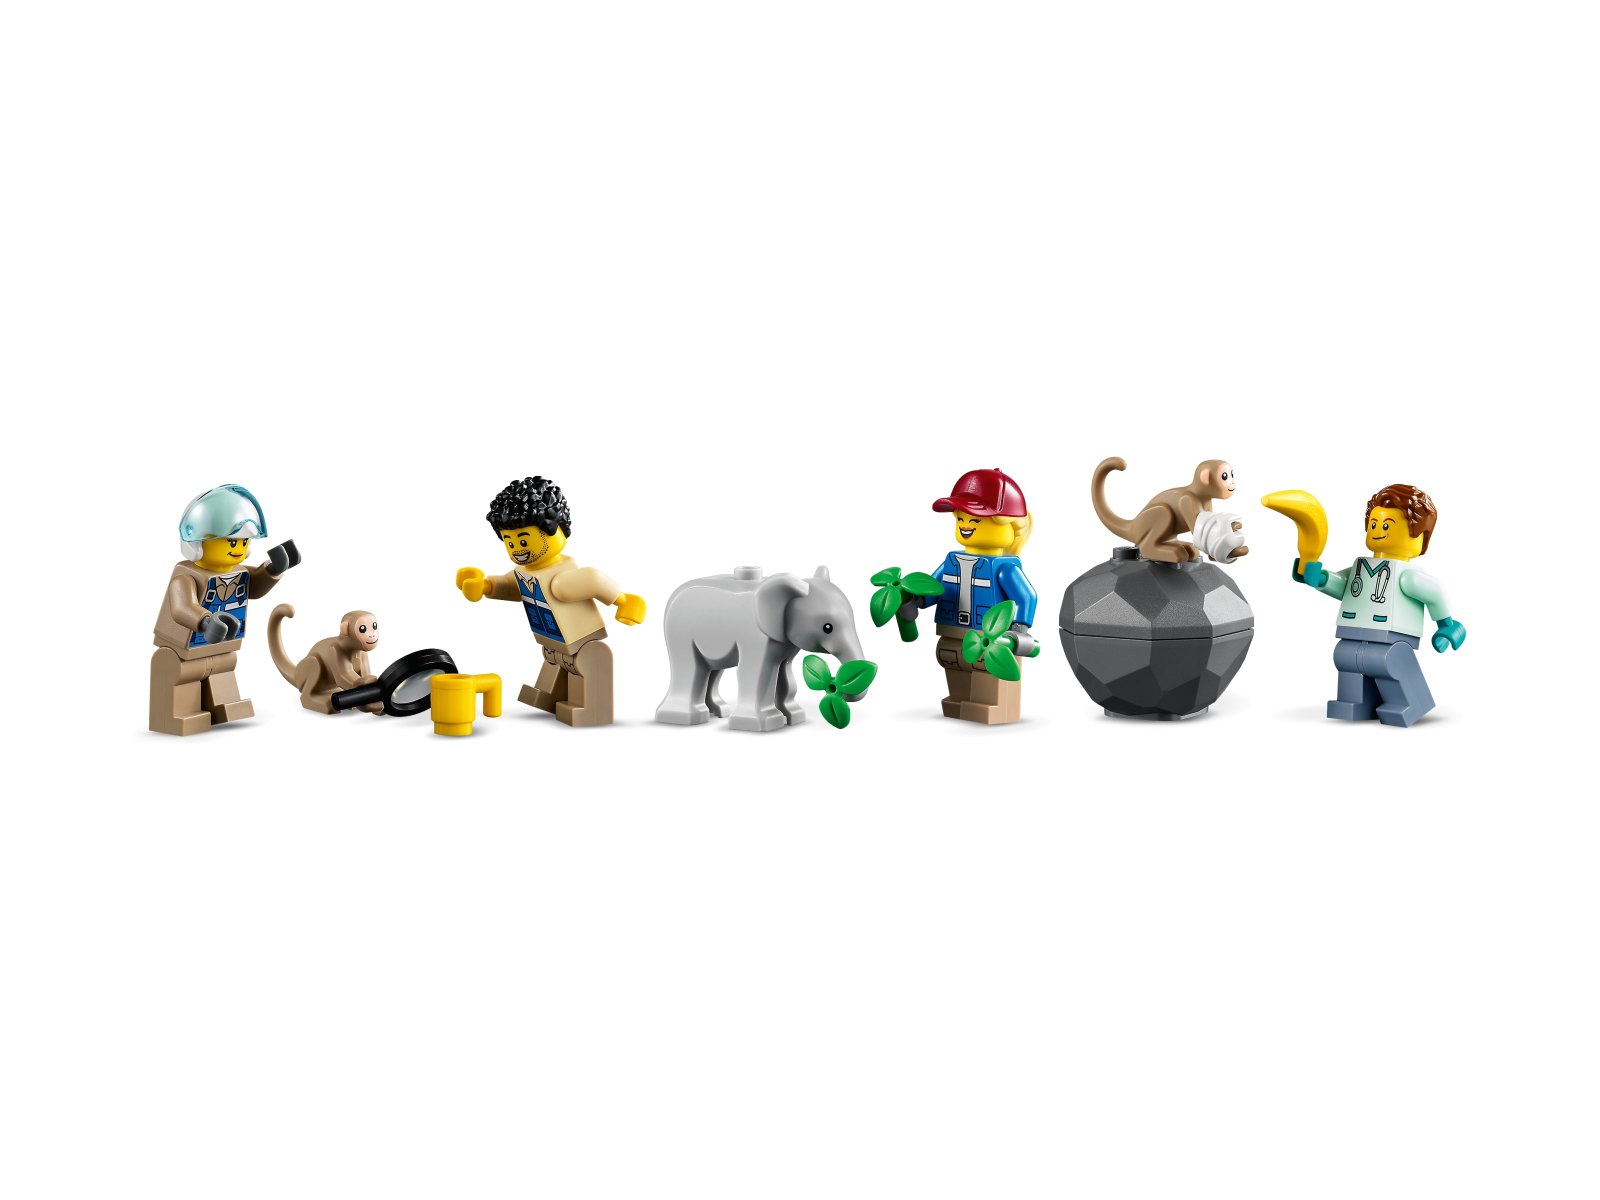 LEGO 60302 Na ratunek dzikim zwierzętom